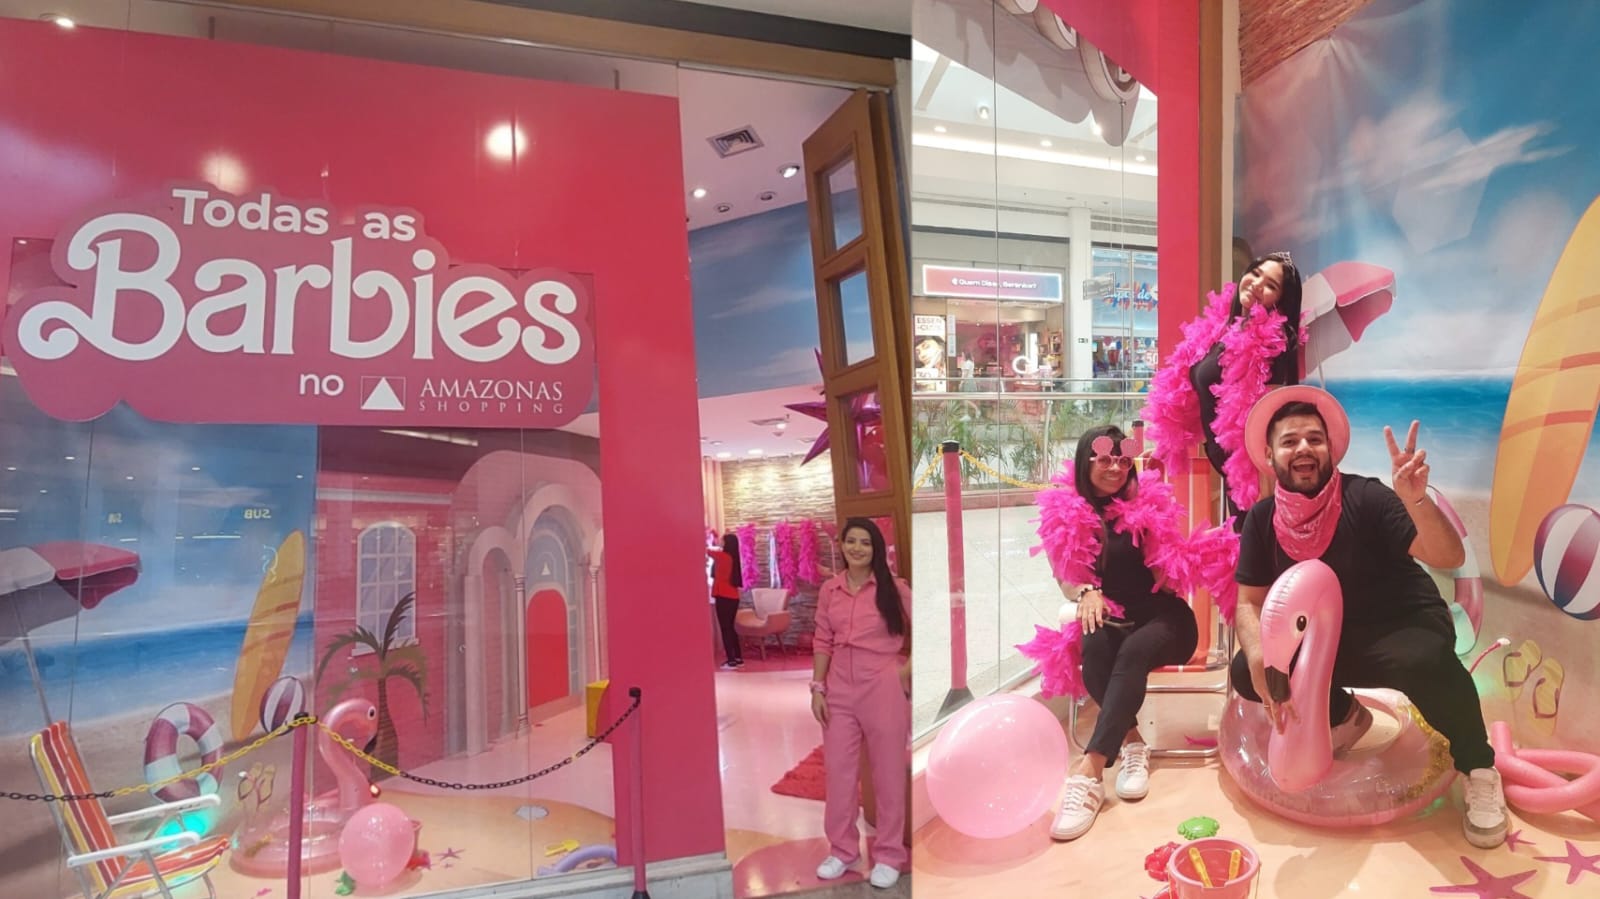 Barbie vai ao Shopping, Imagem